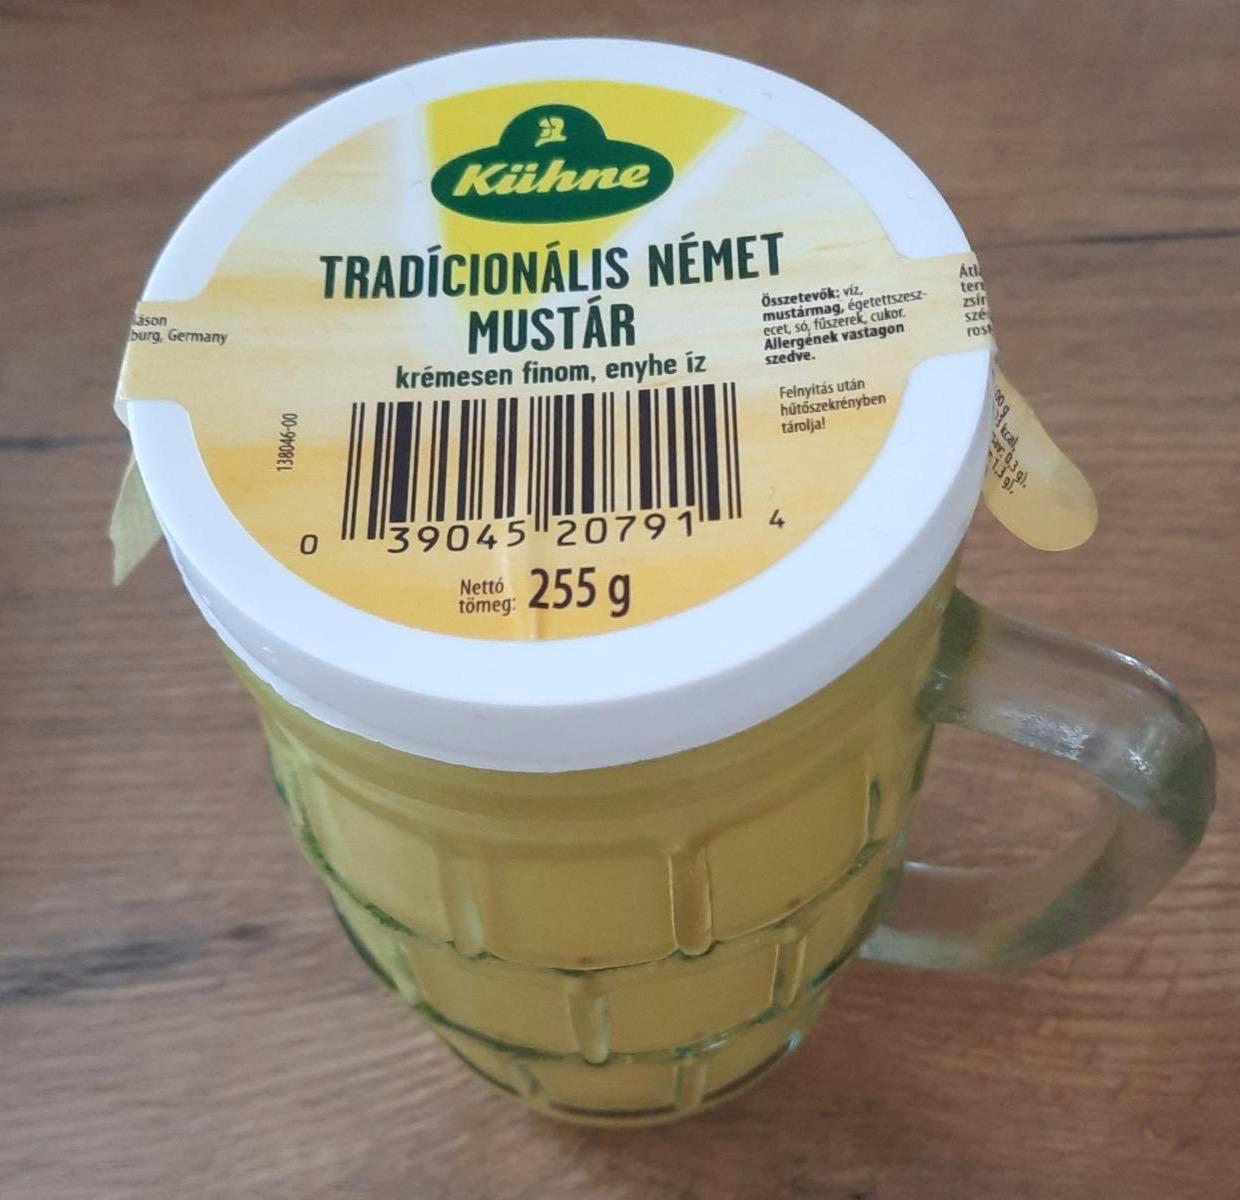 Képek - Tradicionális német mustár Kühne